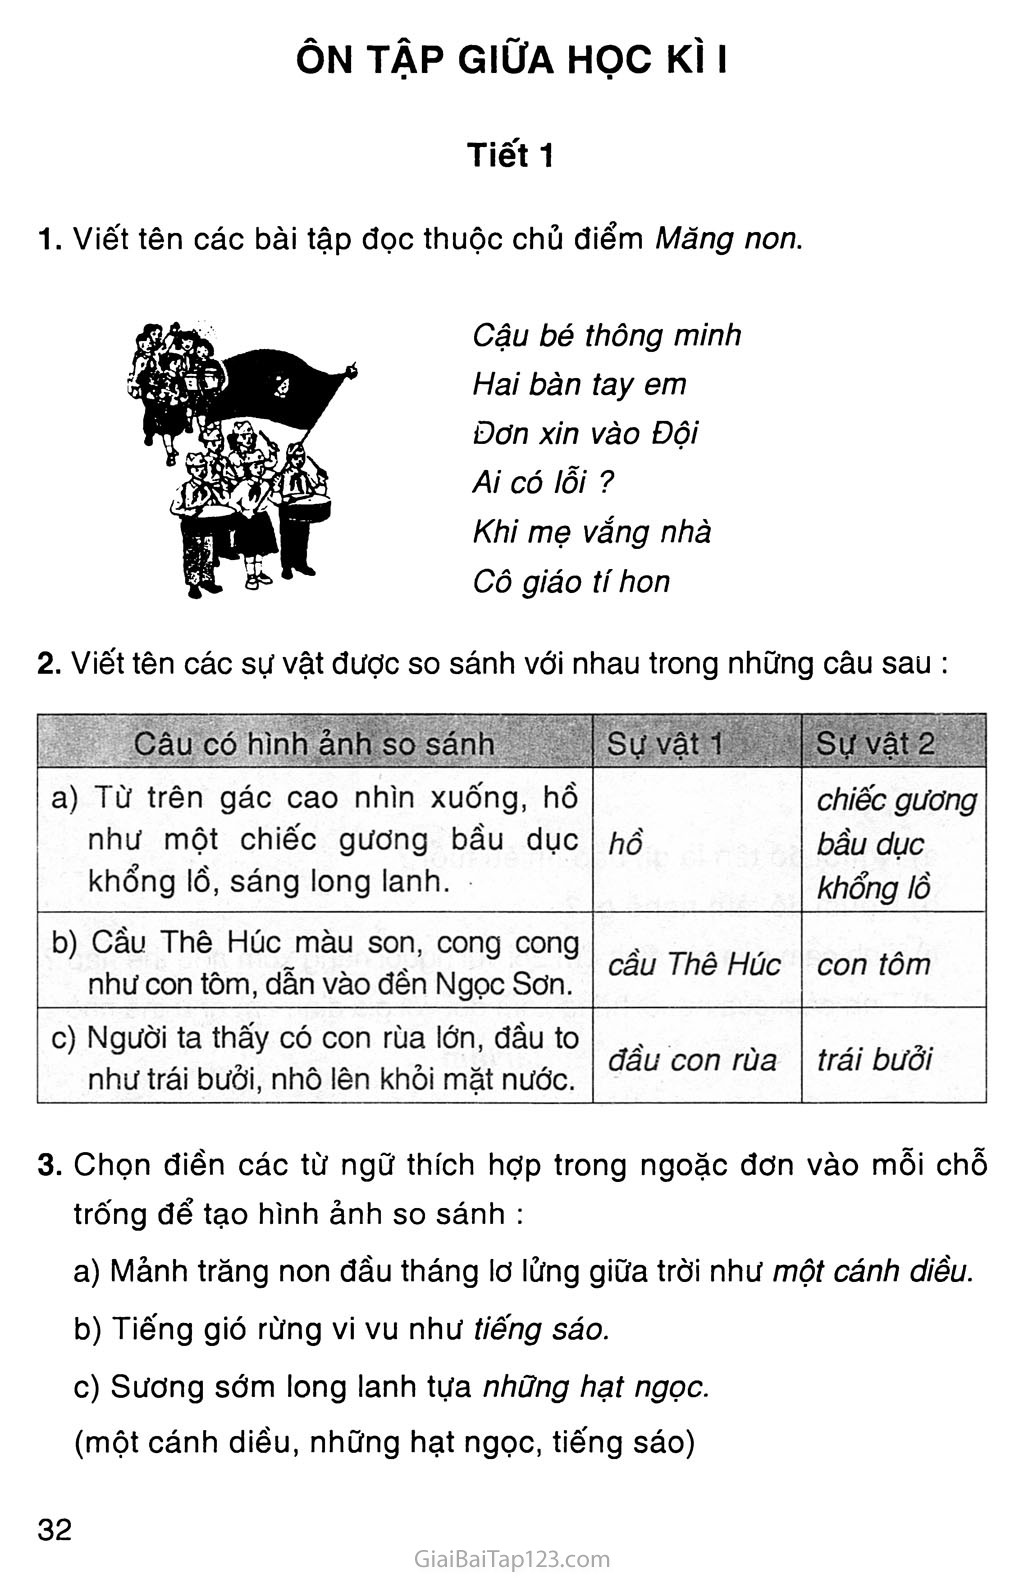 Tiếng Việt là ngôn ngữ đặc trưng và quan trọng của Việt Nam. Hãy tìm hiểu thêm về văn hóa và ngôn ngữ Việt Nam thông qua hình ảnh liên quan đến từ khoá này.